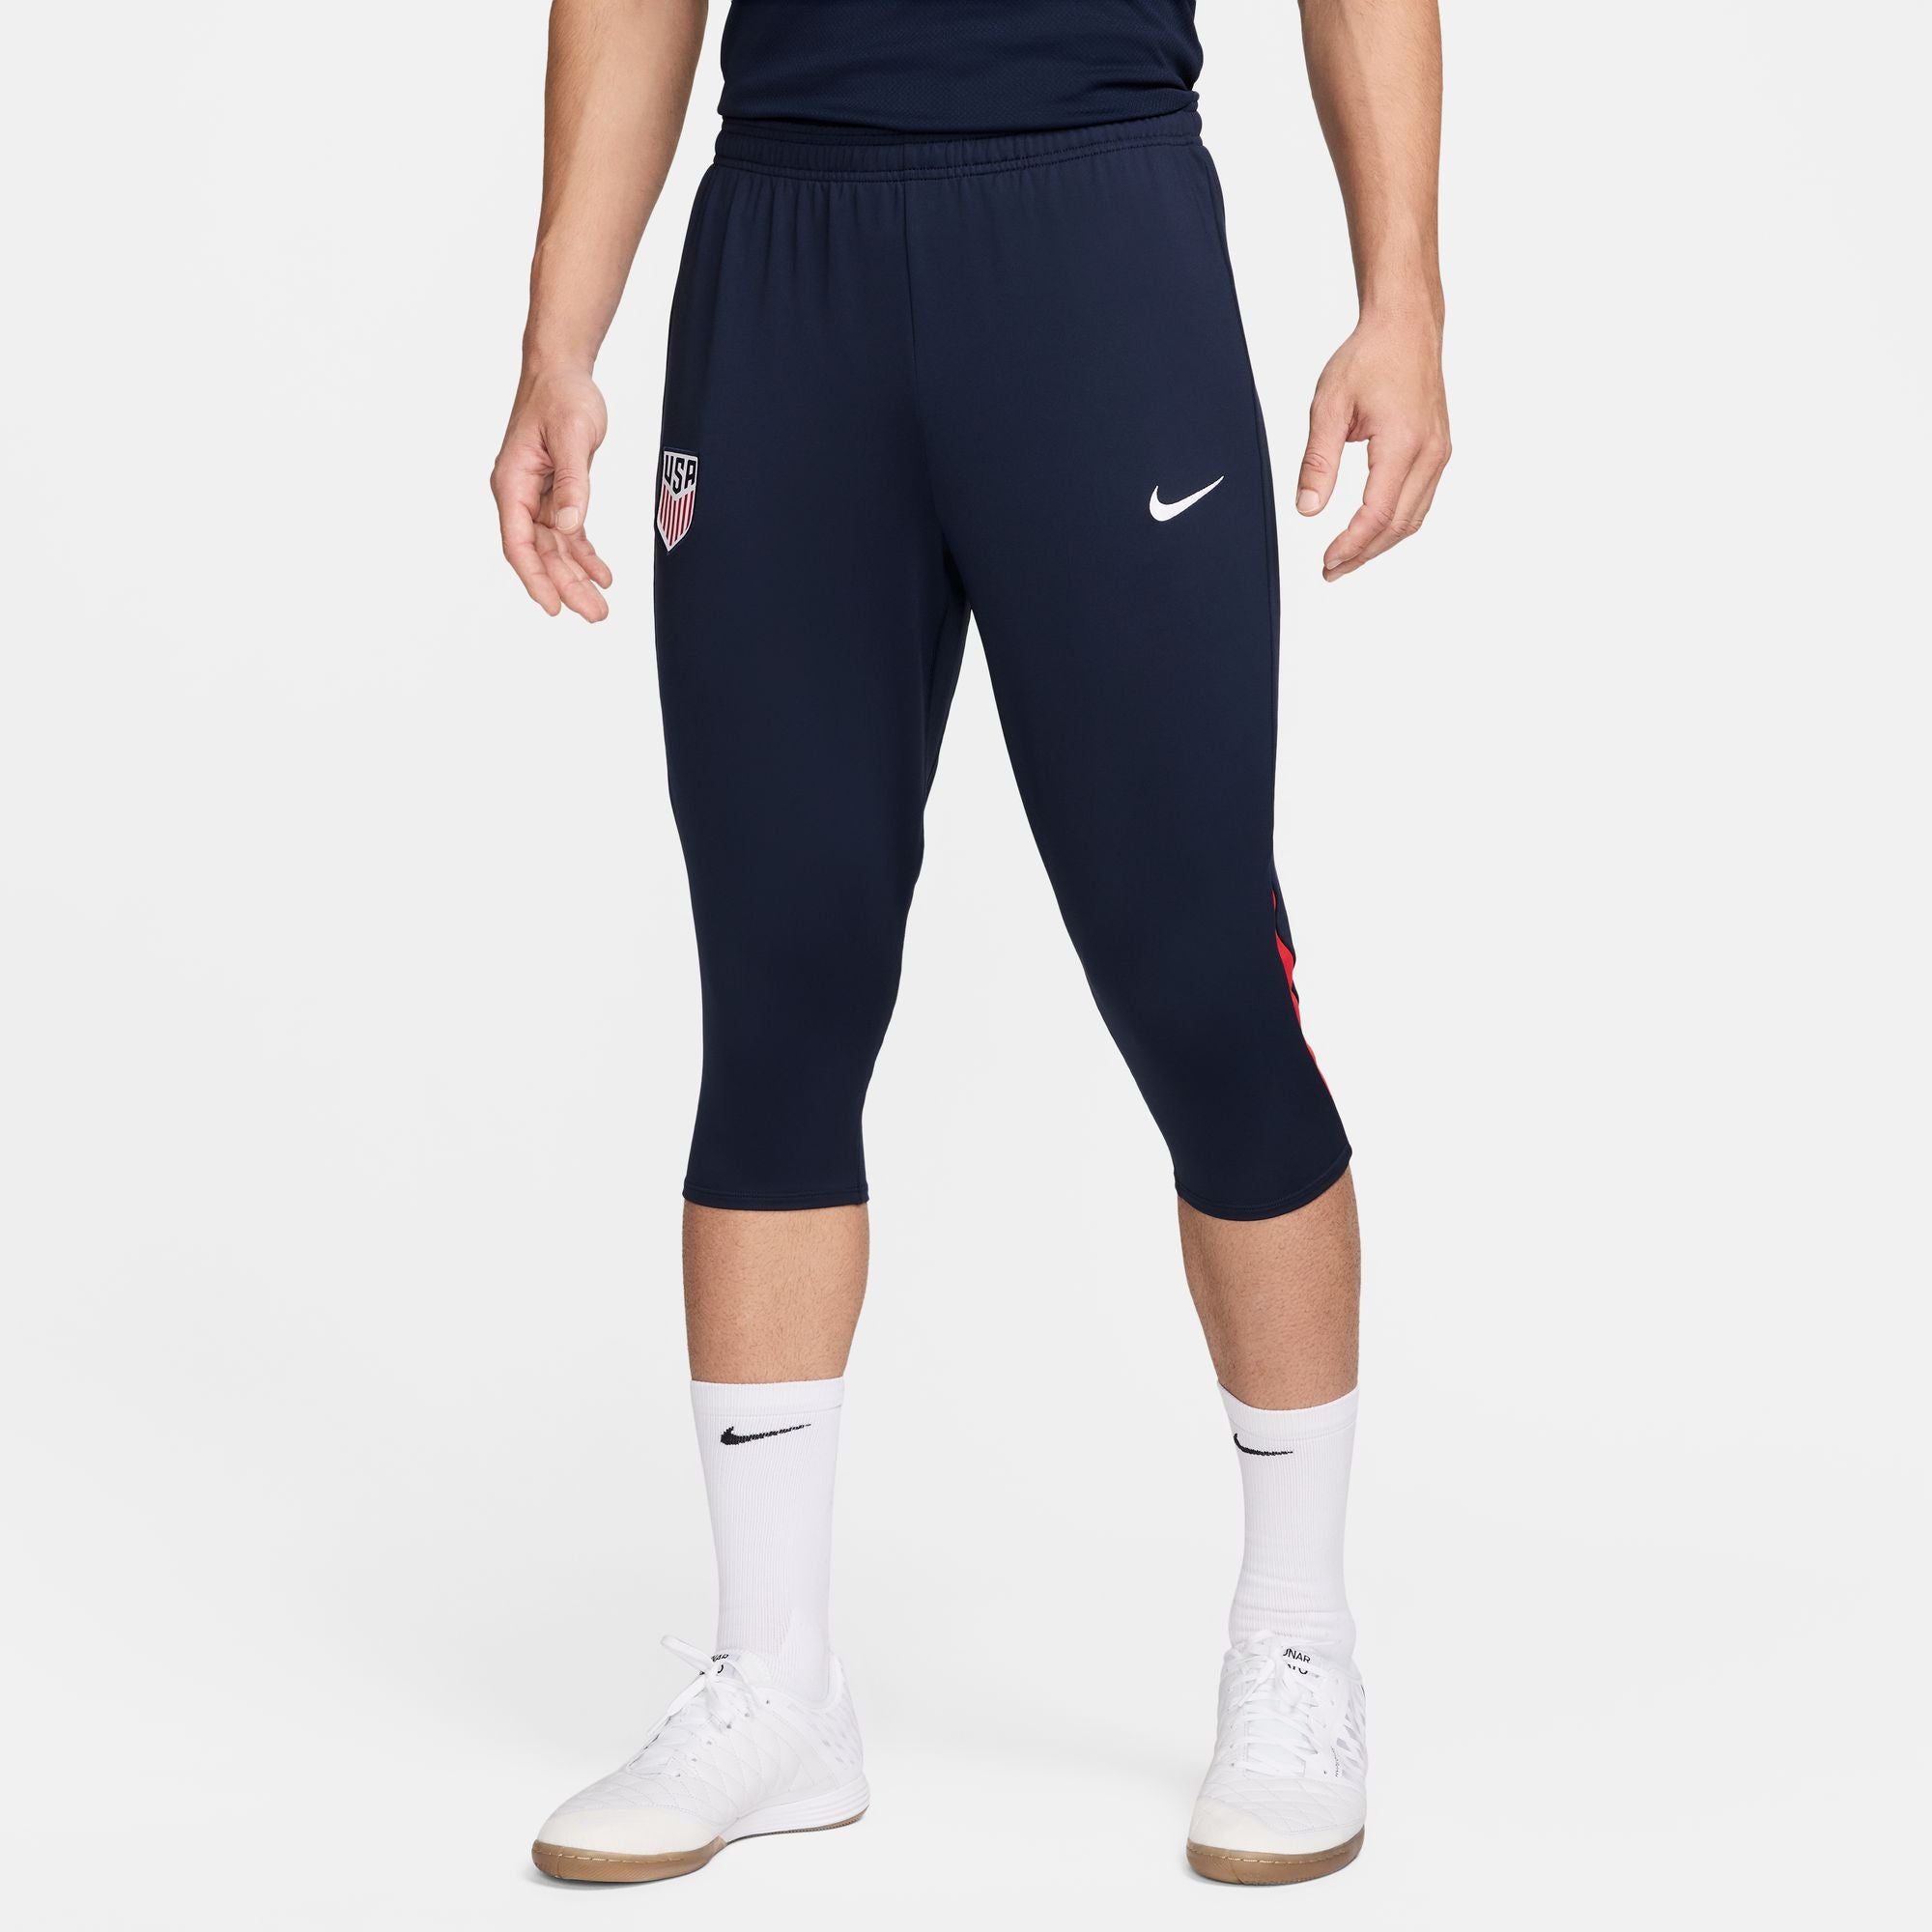 Nike USA Men's Strike 3/4 Pants